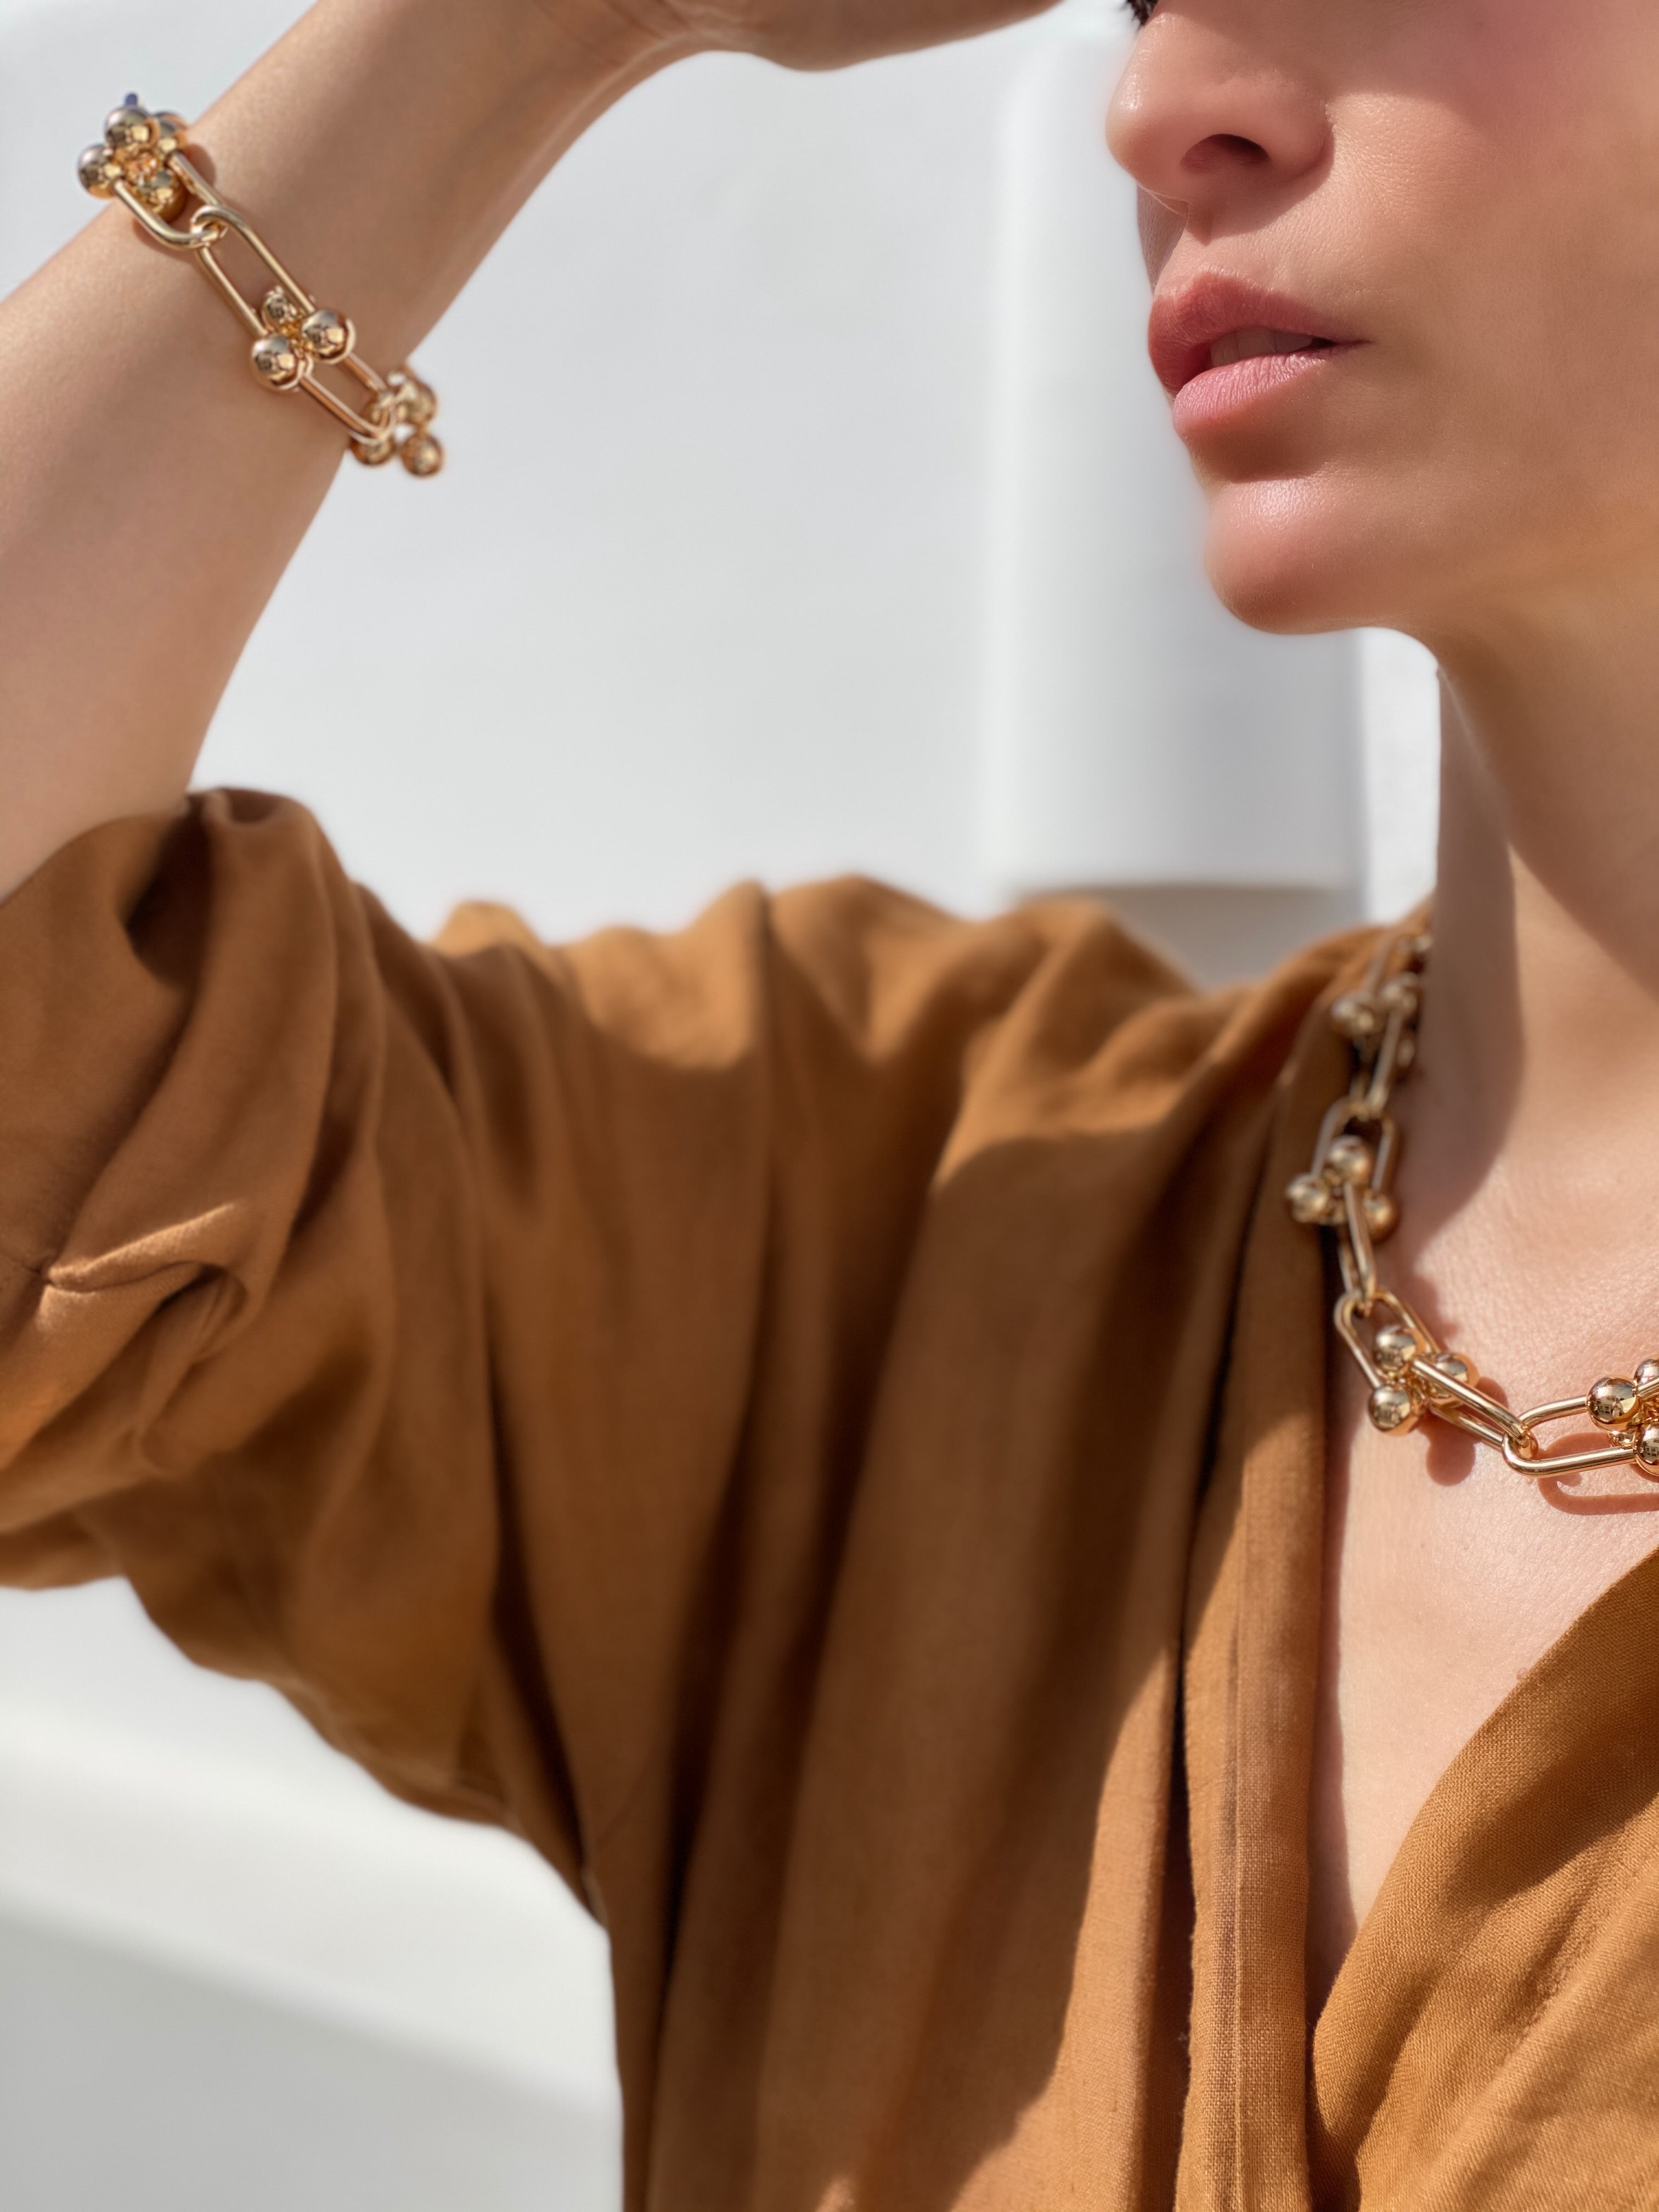 Le Marshand®  -  Joyería en plata 925, chapado en Oro 24K - Collar Amber Le Grand - Diseños propios - Brazaletes, pulseras, collares y pendientes - Joyería online - Mallorca